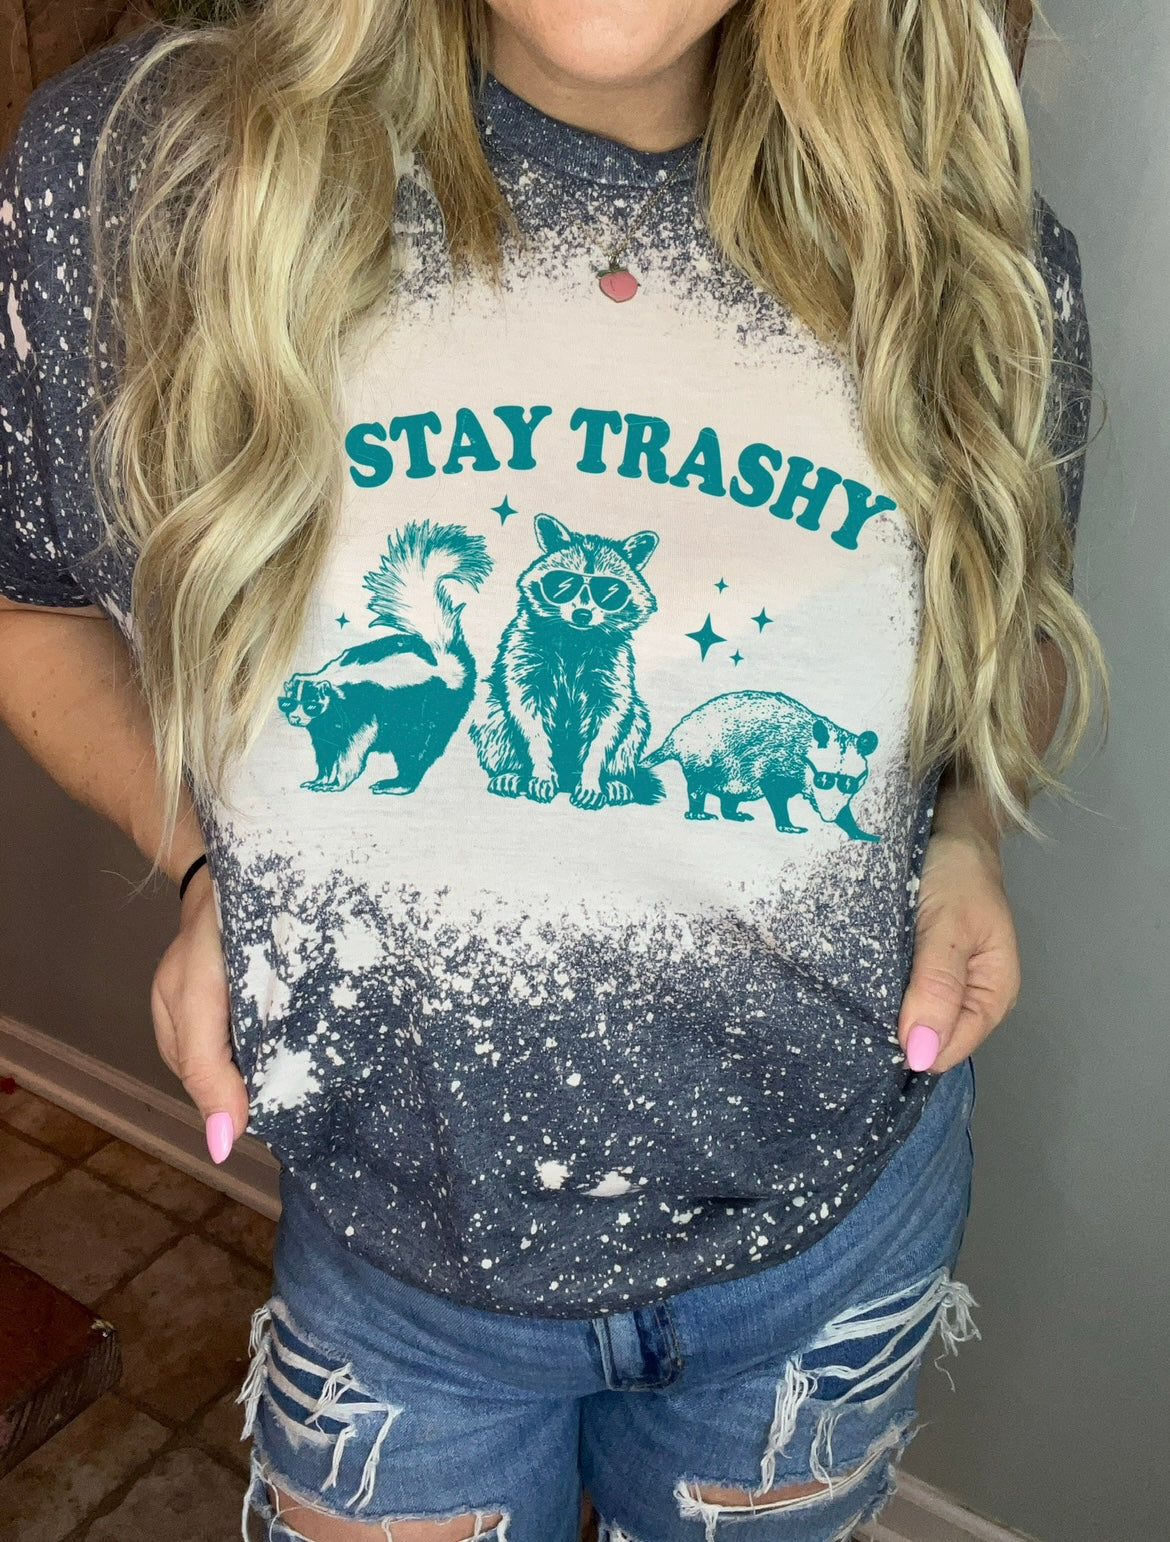 Stay trashy